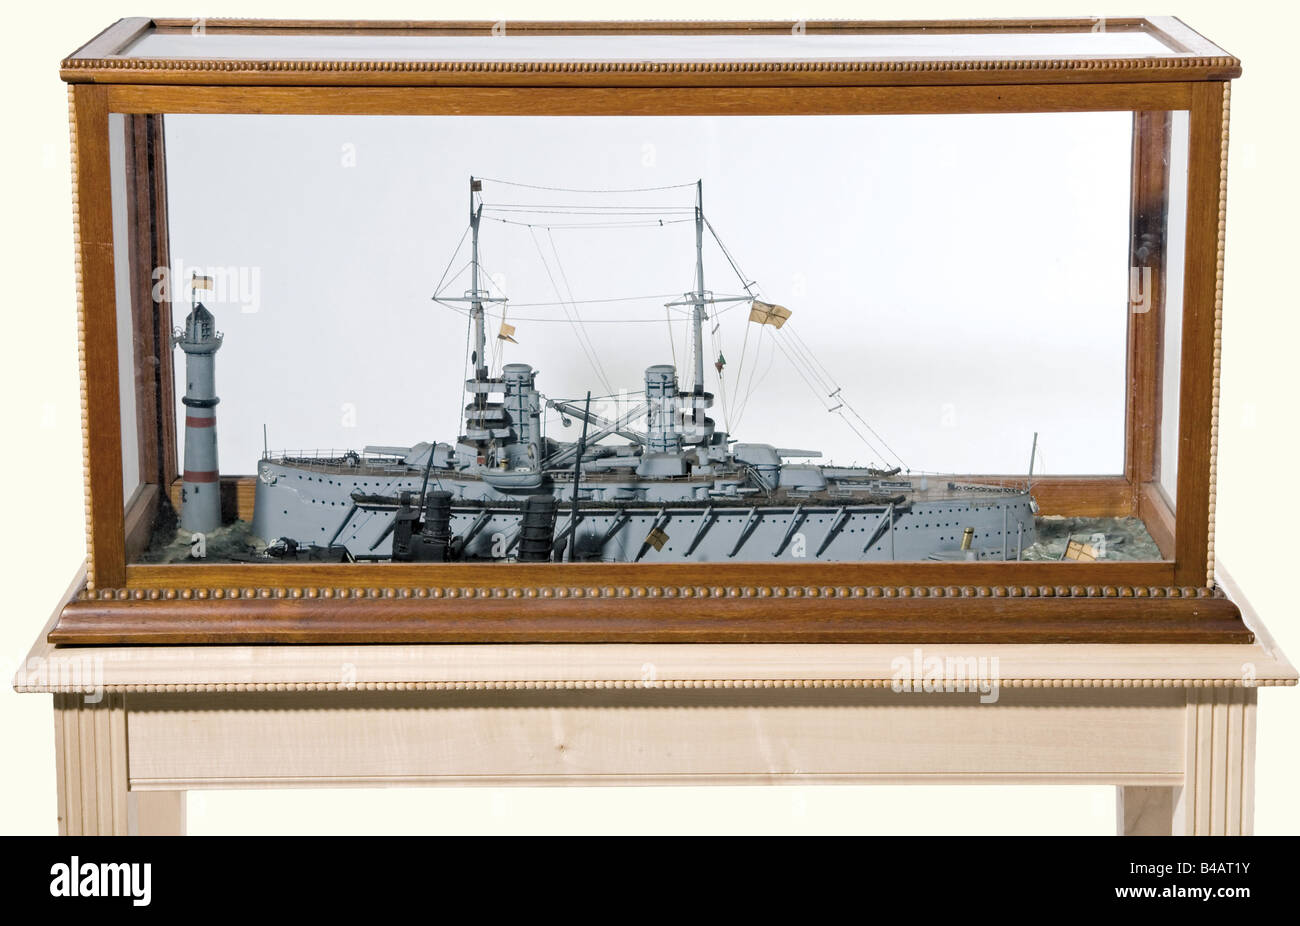 Pequeña 'Flotilla', un diorama del período anterior a la Primera Guerra Mundial. El diorama consiste en modelos de un crucero blindado imperial, un destructor de barcos torpedo, el U-boat, U-9, y un lanzamiento de vapor. Todos los modelos están en una superficie de agua cuidadosamente modelada con un modelo de faro. En un estuche acristalado en una mesa de visualización personalizada. Grietas por edad en la superficie del agua. Dimensiones del estuche: 108 x 52 x 29 cm. Altura, incluida la mesa de visualización de 126 cm. Diorama decorativo de una flotilla imperial del período alrededor de 1910. Histórico, histórico, 1910s, siglo 20, marina, naval fo, Foto de stock